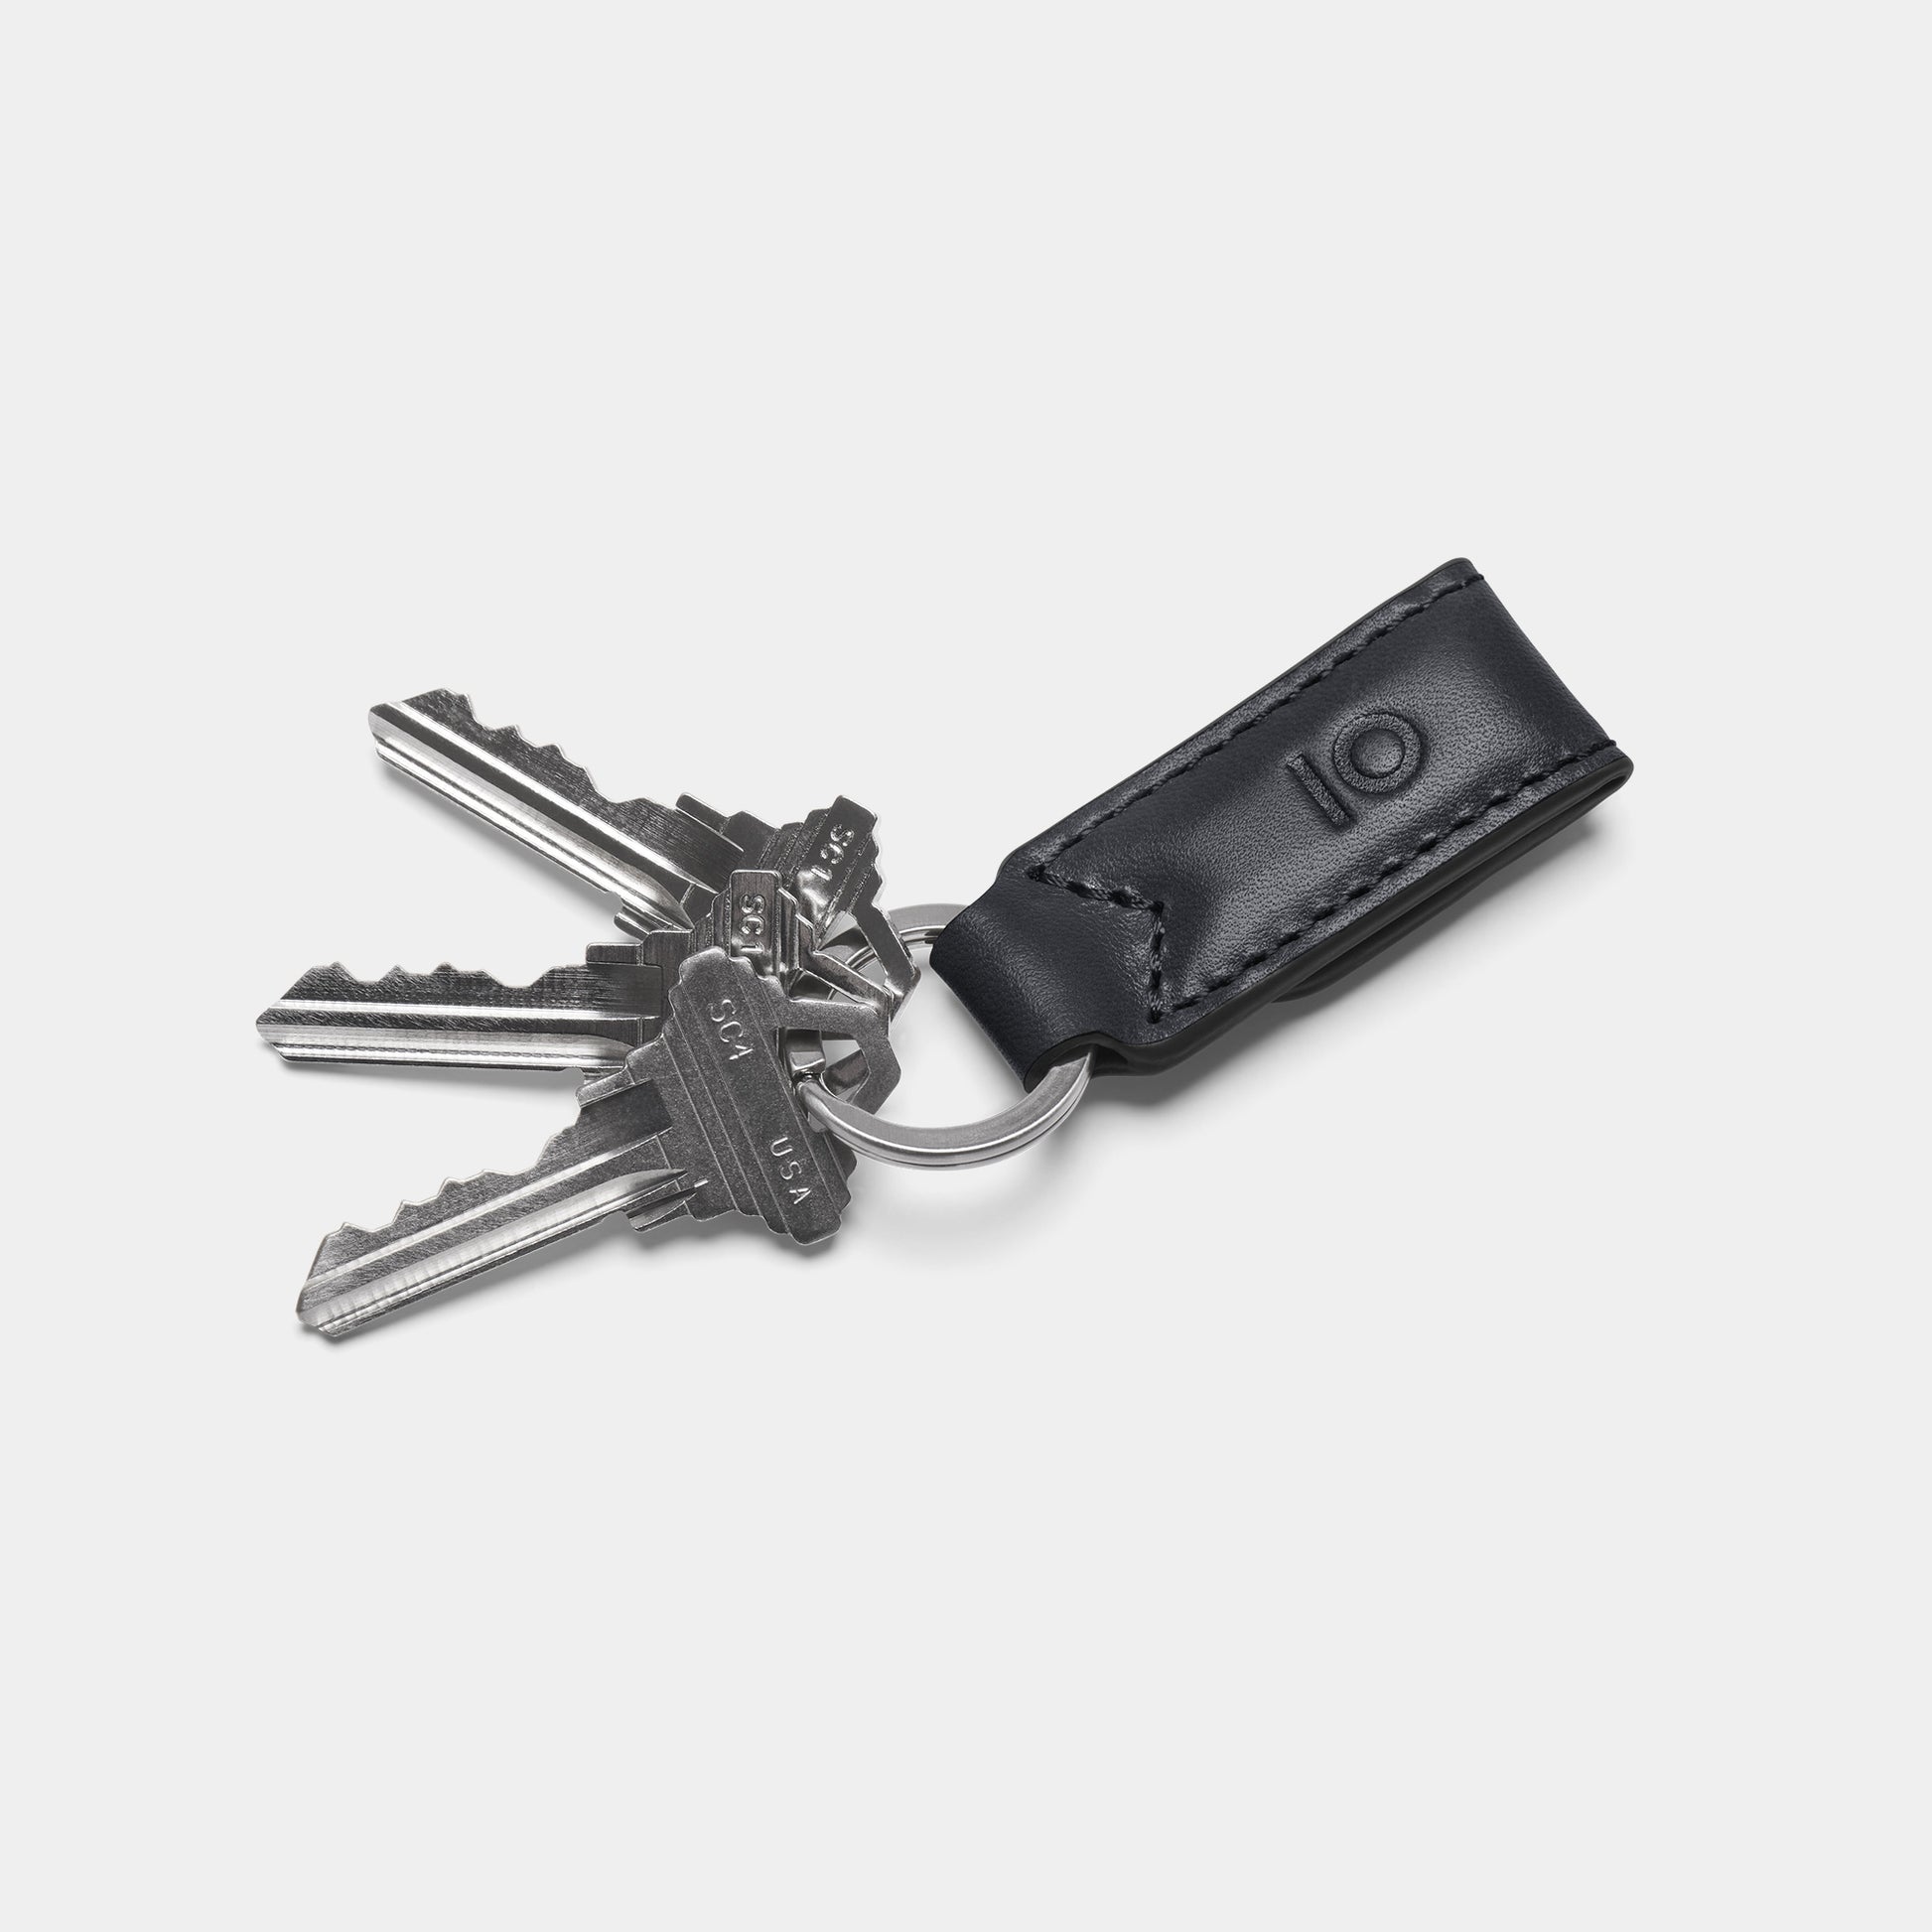 Four black car fobs, Transponder car key Transponder car key, Electronic  car keys material, transparent background PNG clipart